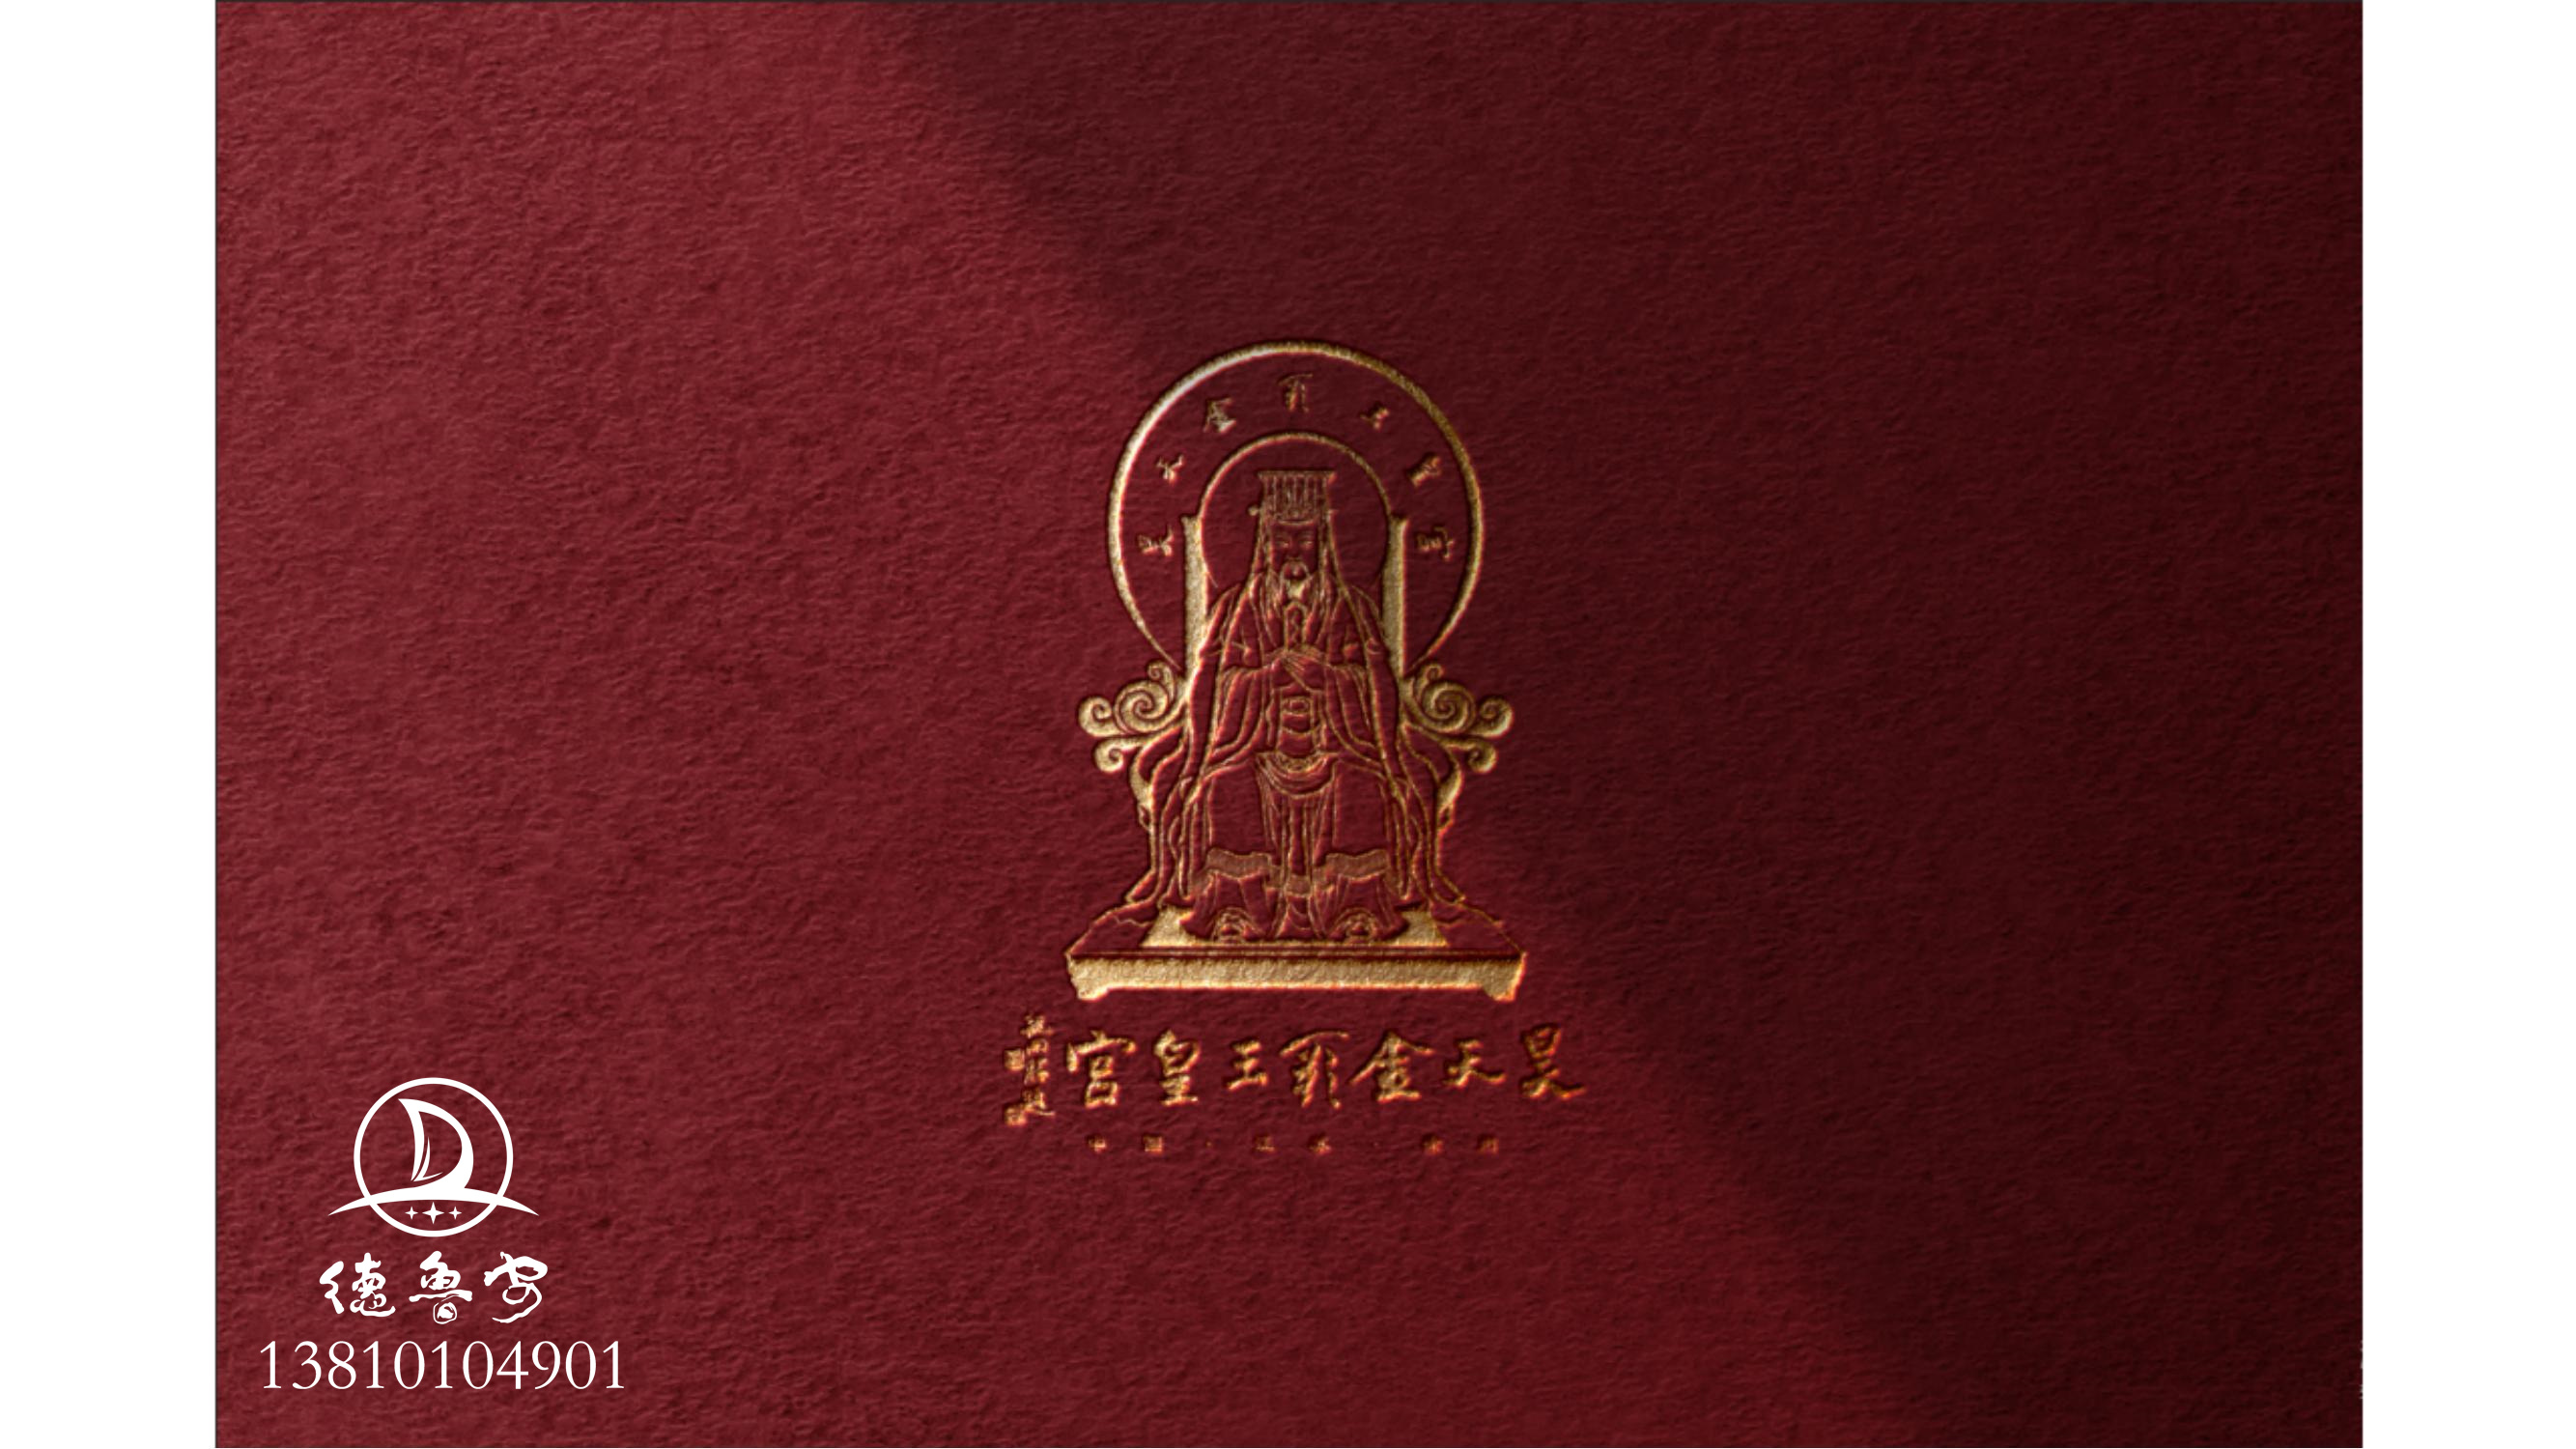 玉皇宫 logo定稿方案_15.jpg